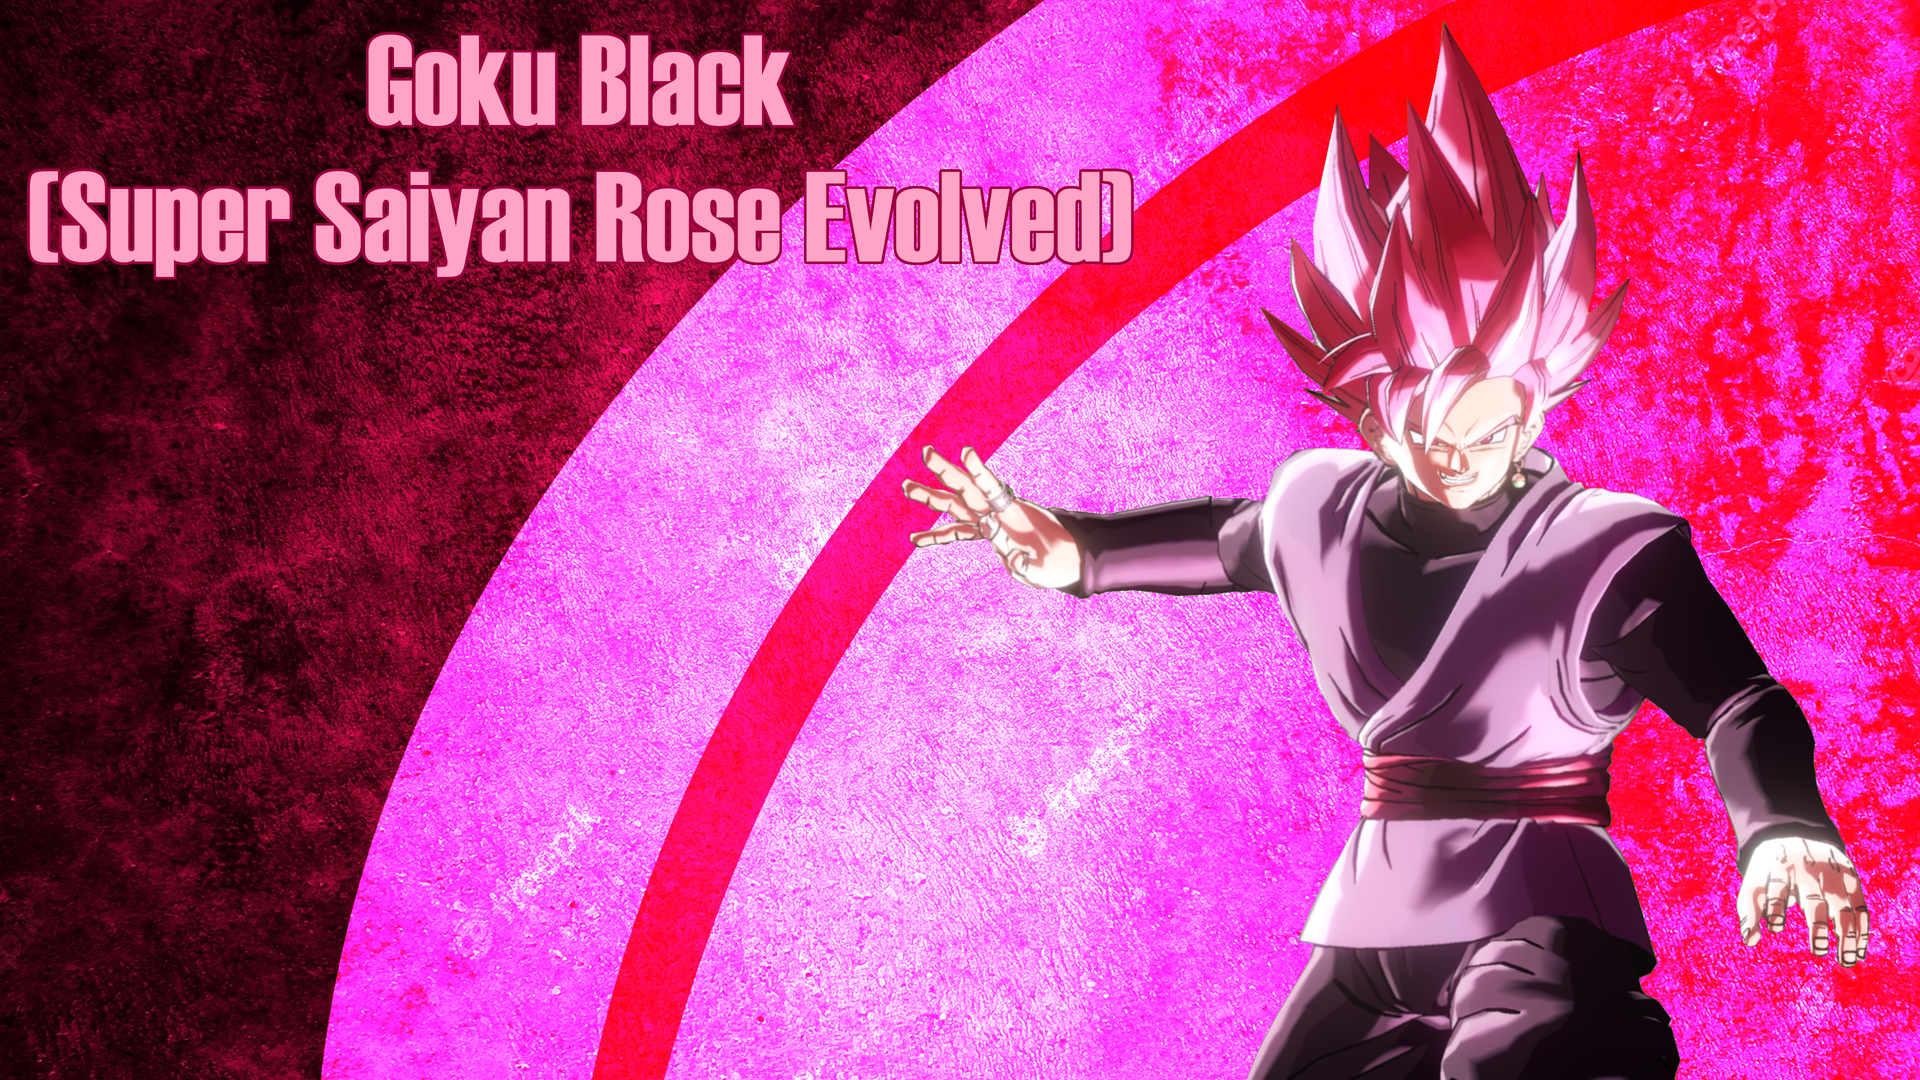 Goku Black (Super Saiyan Rose Evolved)